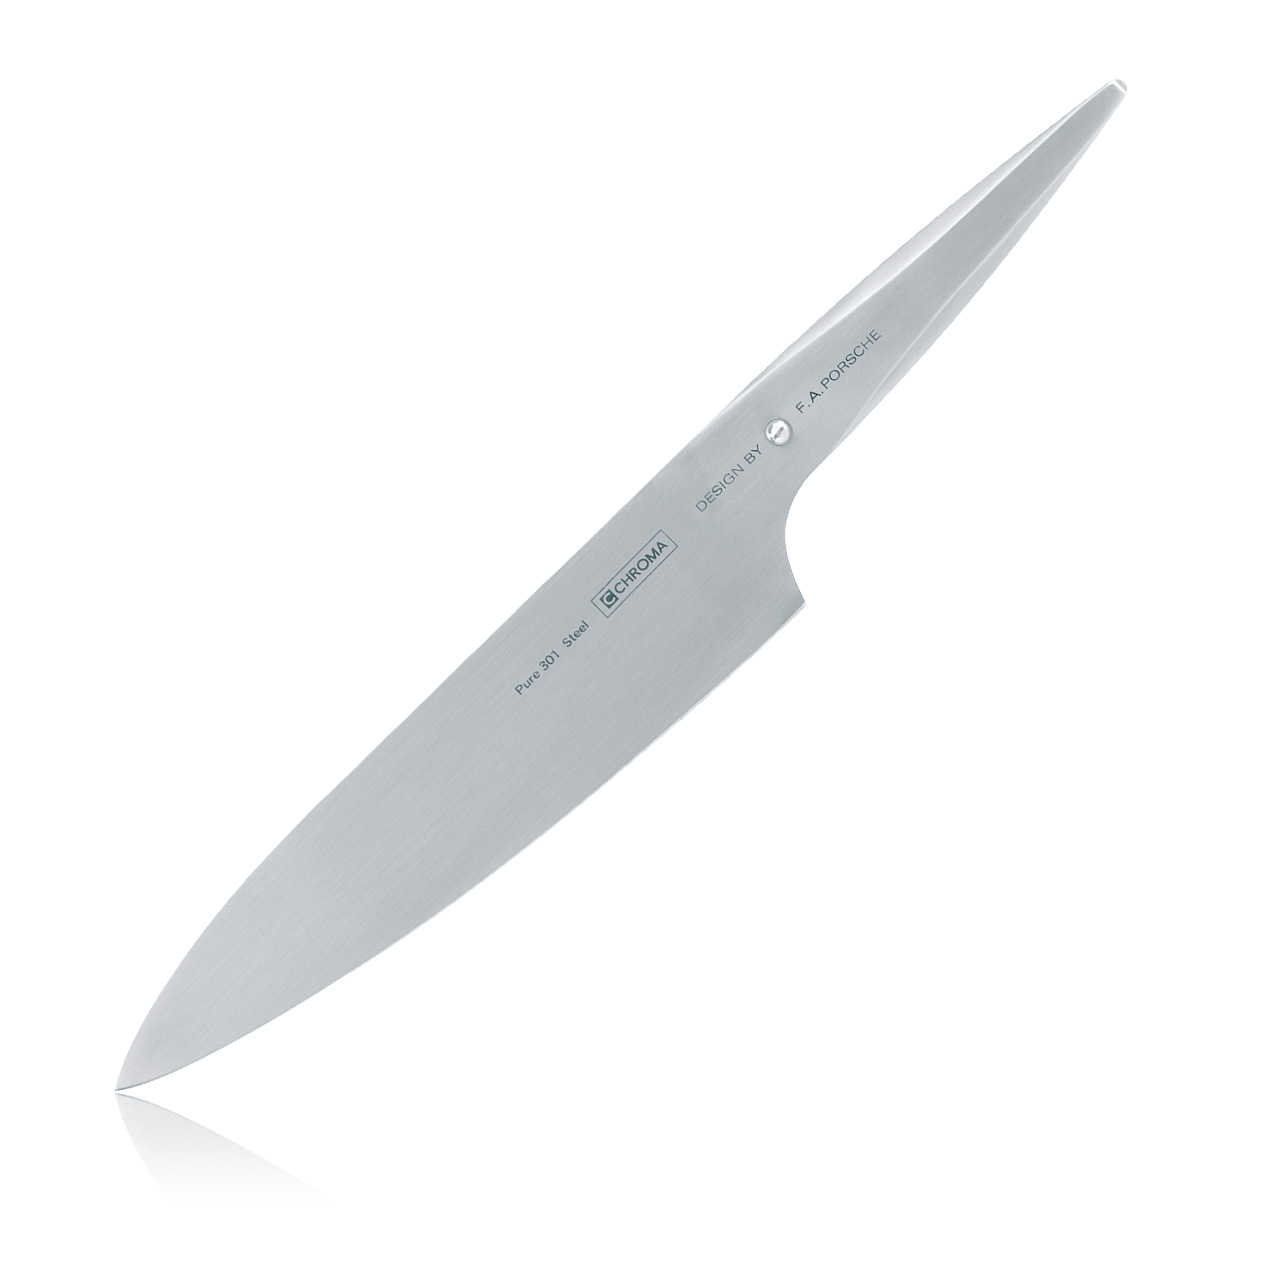 Knife Design Images